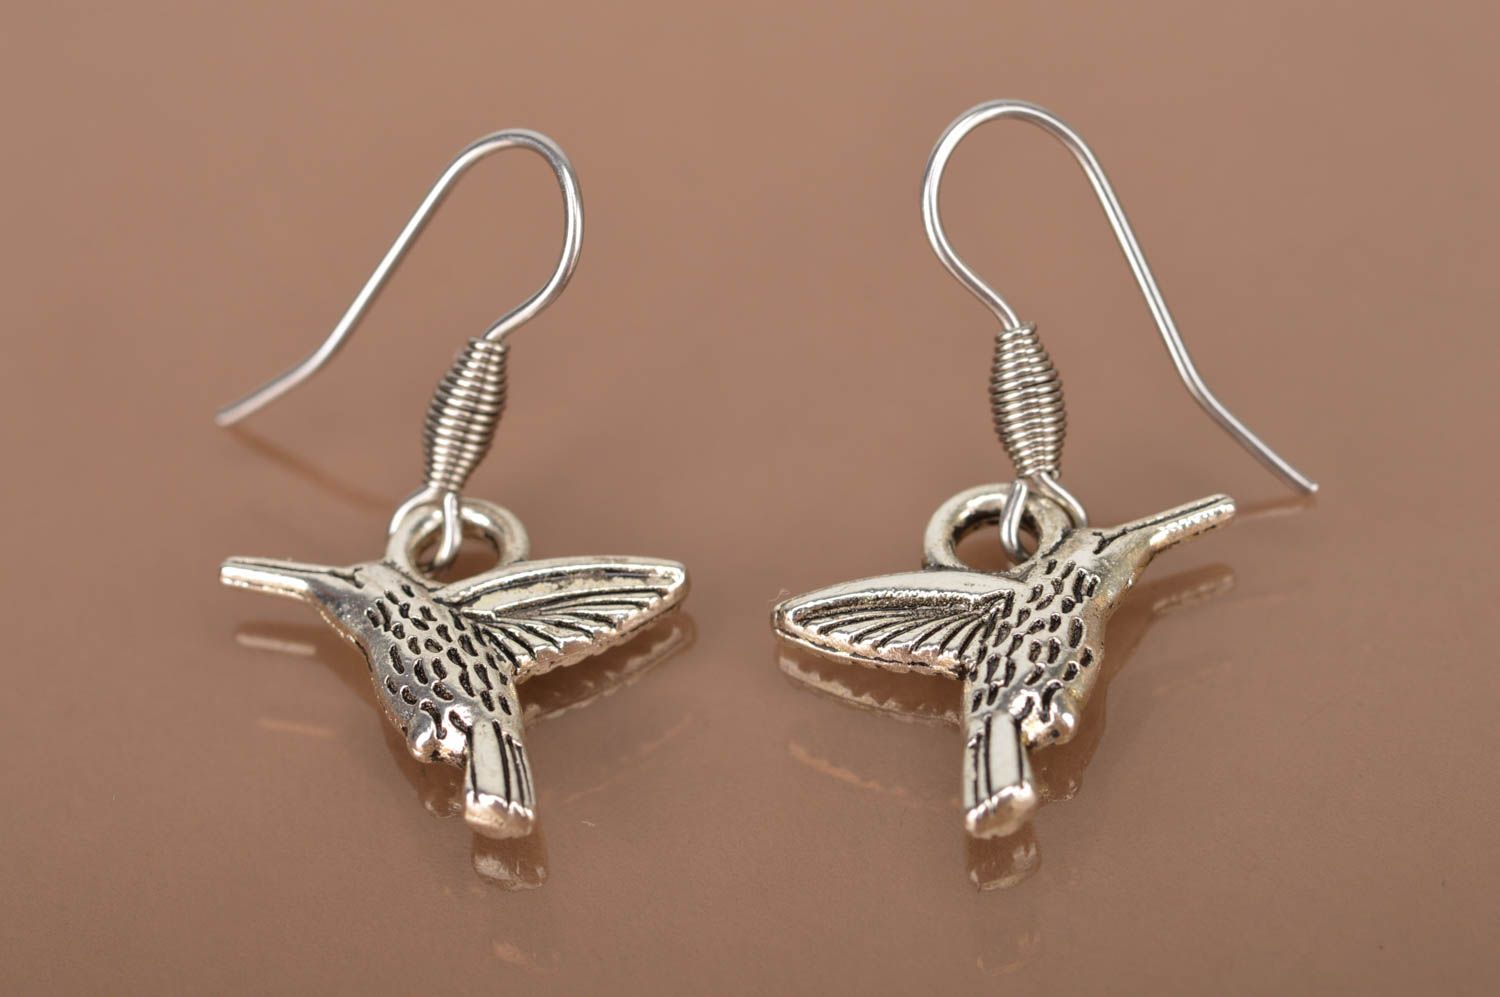 Handmade earrings metal jewelry dangling earrings women accessories gift ideas photo 5